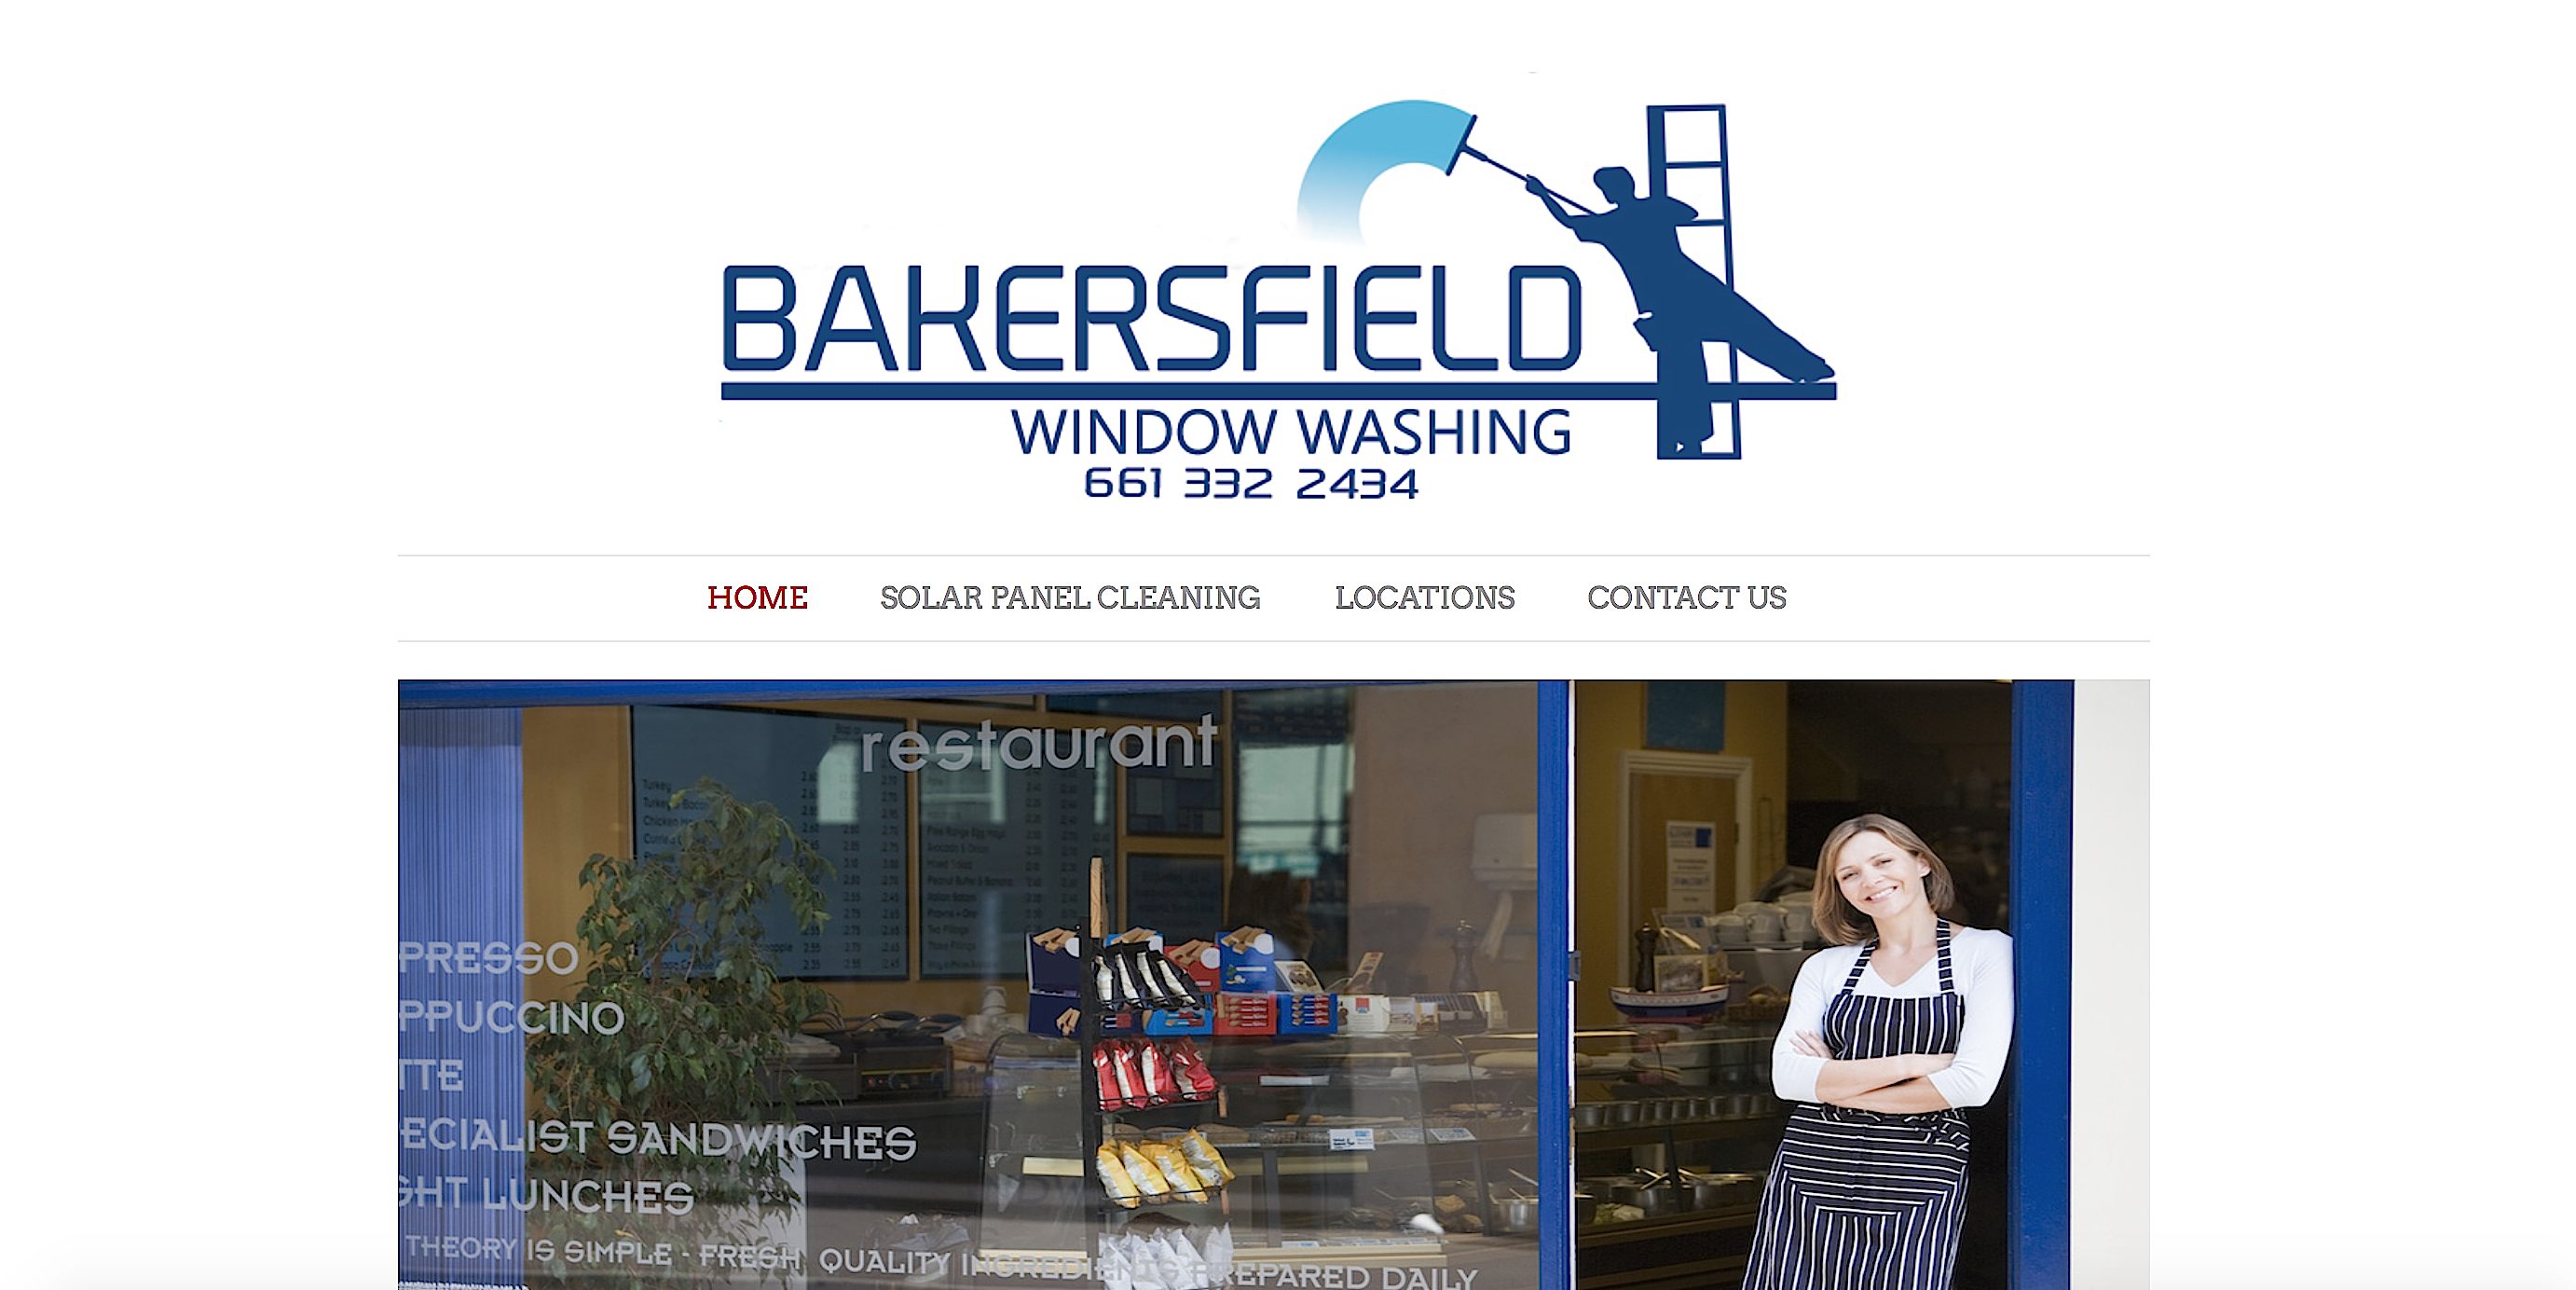 acme web design bakersfield, Bakersfield web design, logo design Bakersfield, Bakersfield logo design